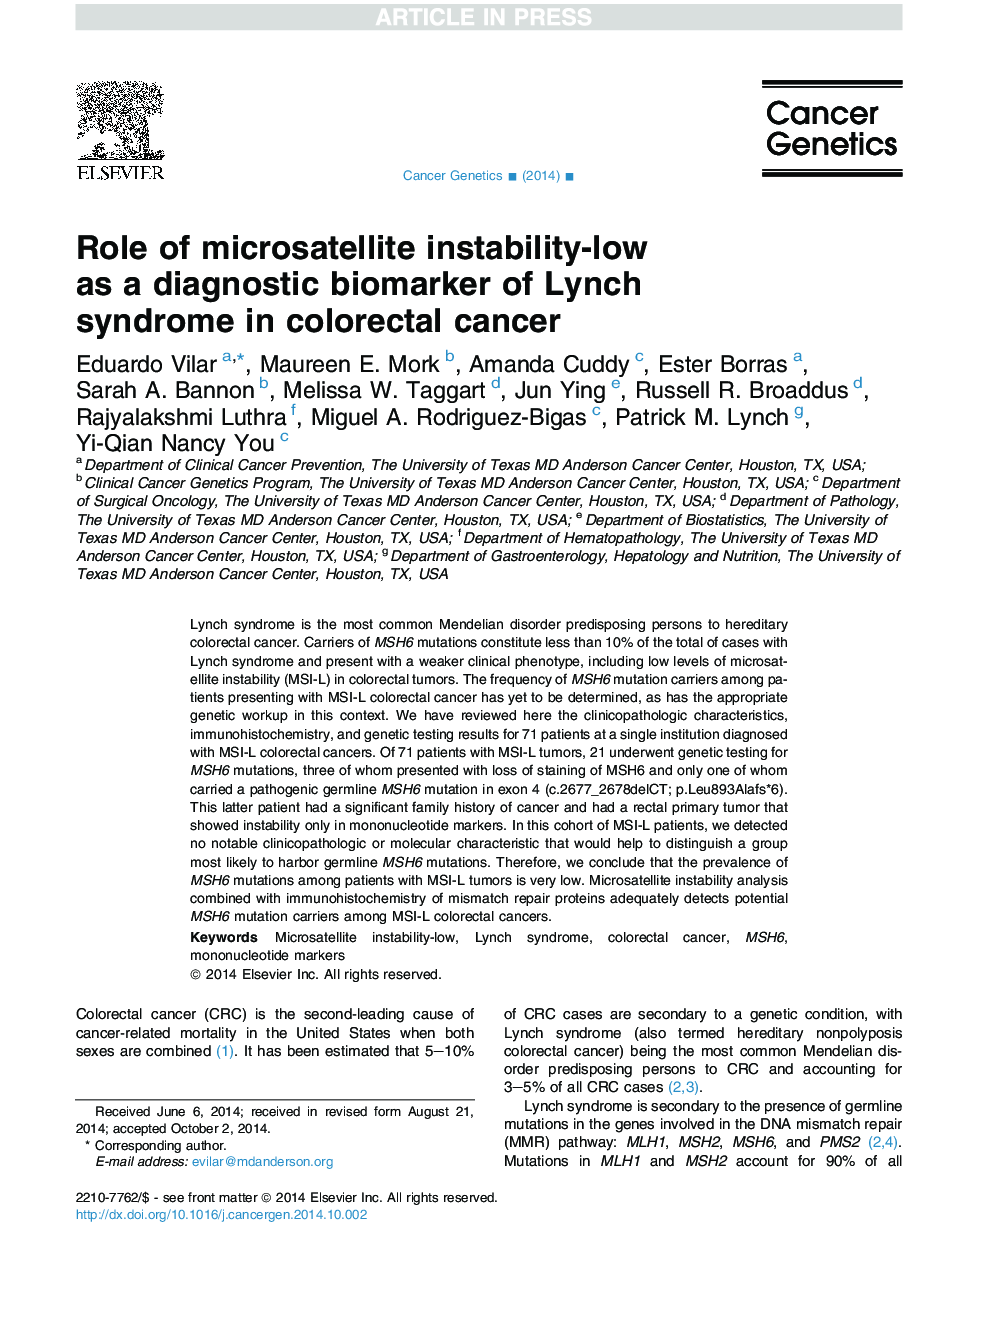 نقش بی ثباتی میکروسفتال-کم به عنوان نشانگر زیستی تشخیصی سندرم لینچ در سرطان کولورکتال 